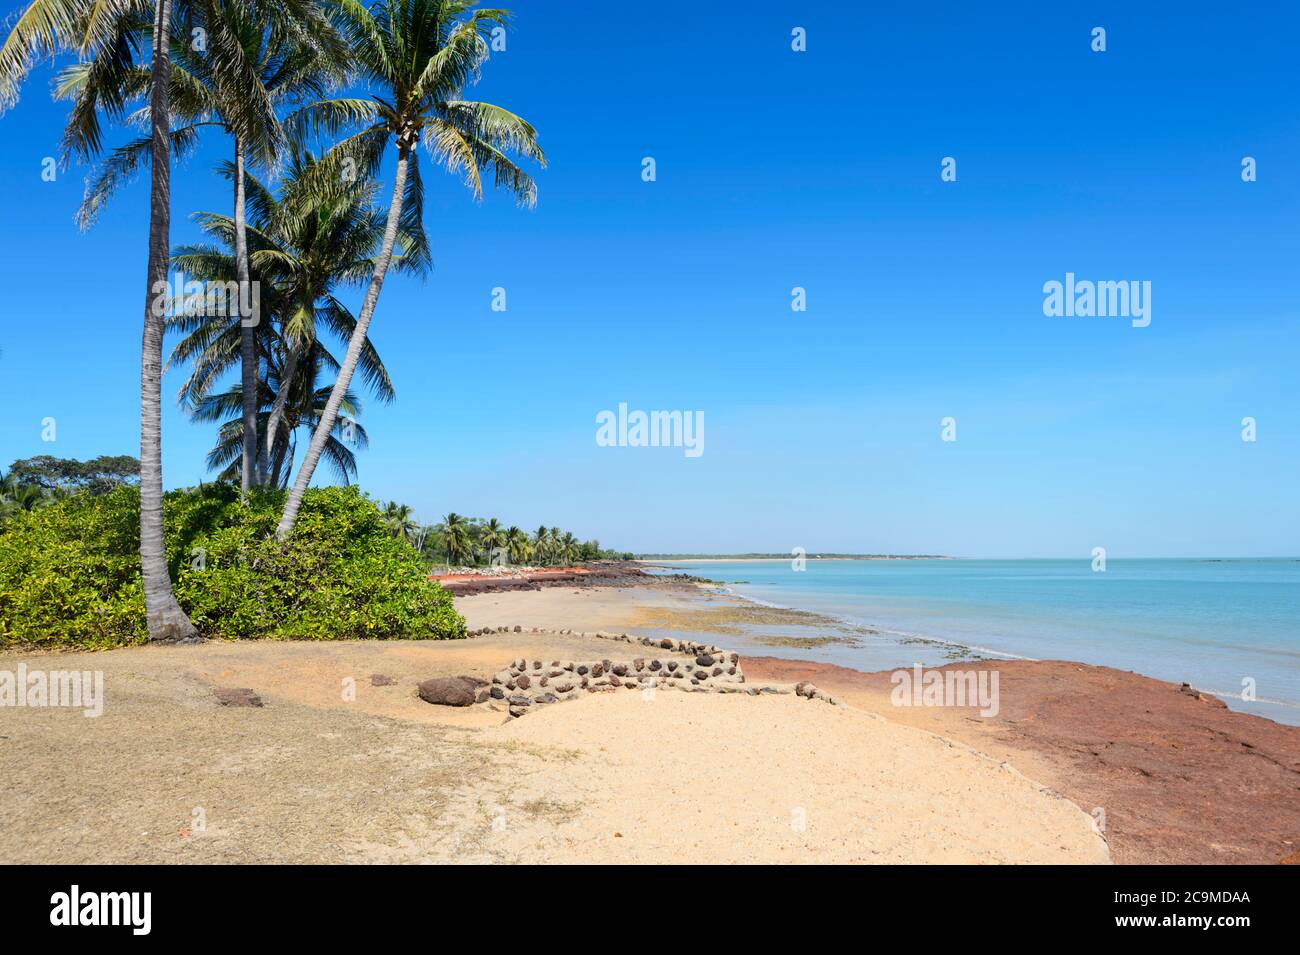 Blick auf den landschaftlich reizvollen, von Palmen gesäumten Dundee Beach in der Nähe von Darwin, Northern Territory, NT, Australien Stockfoto